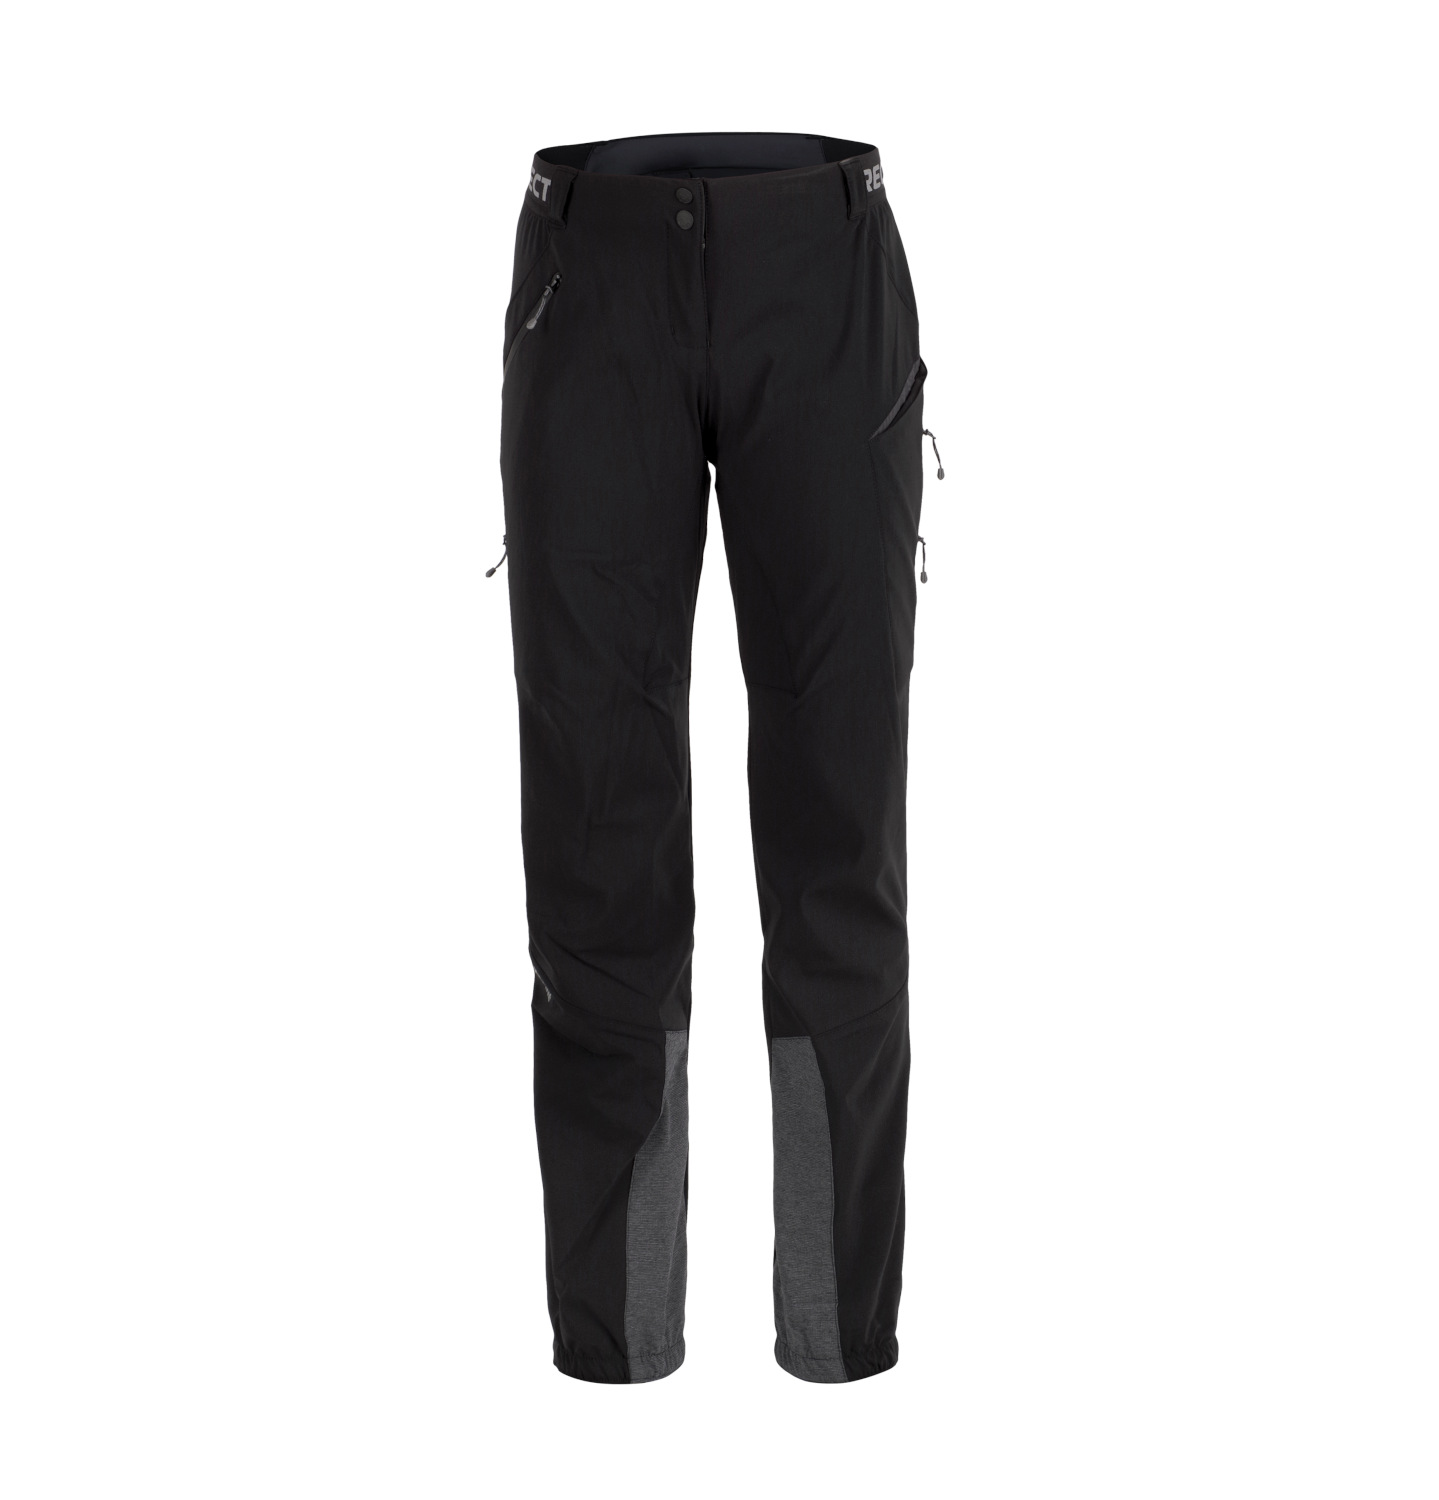 Dámské zimní funkční kalhoty Direct Alpine REBEL LADY 1.0 black S